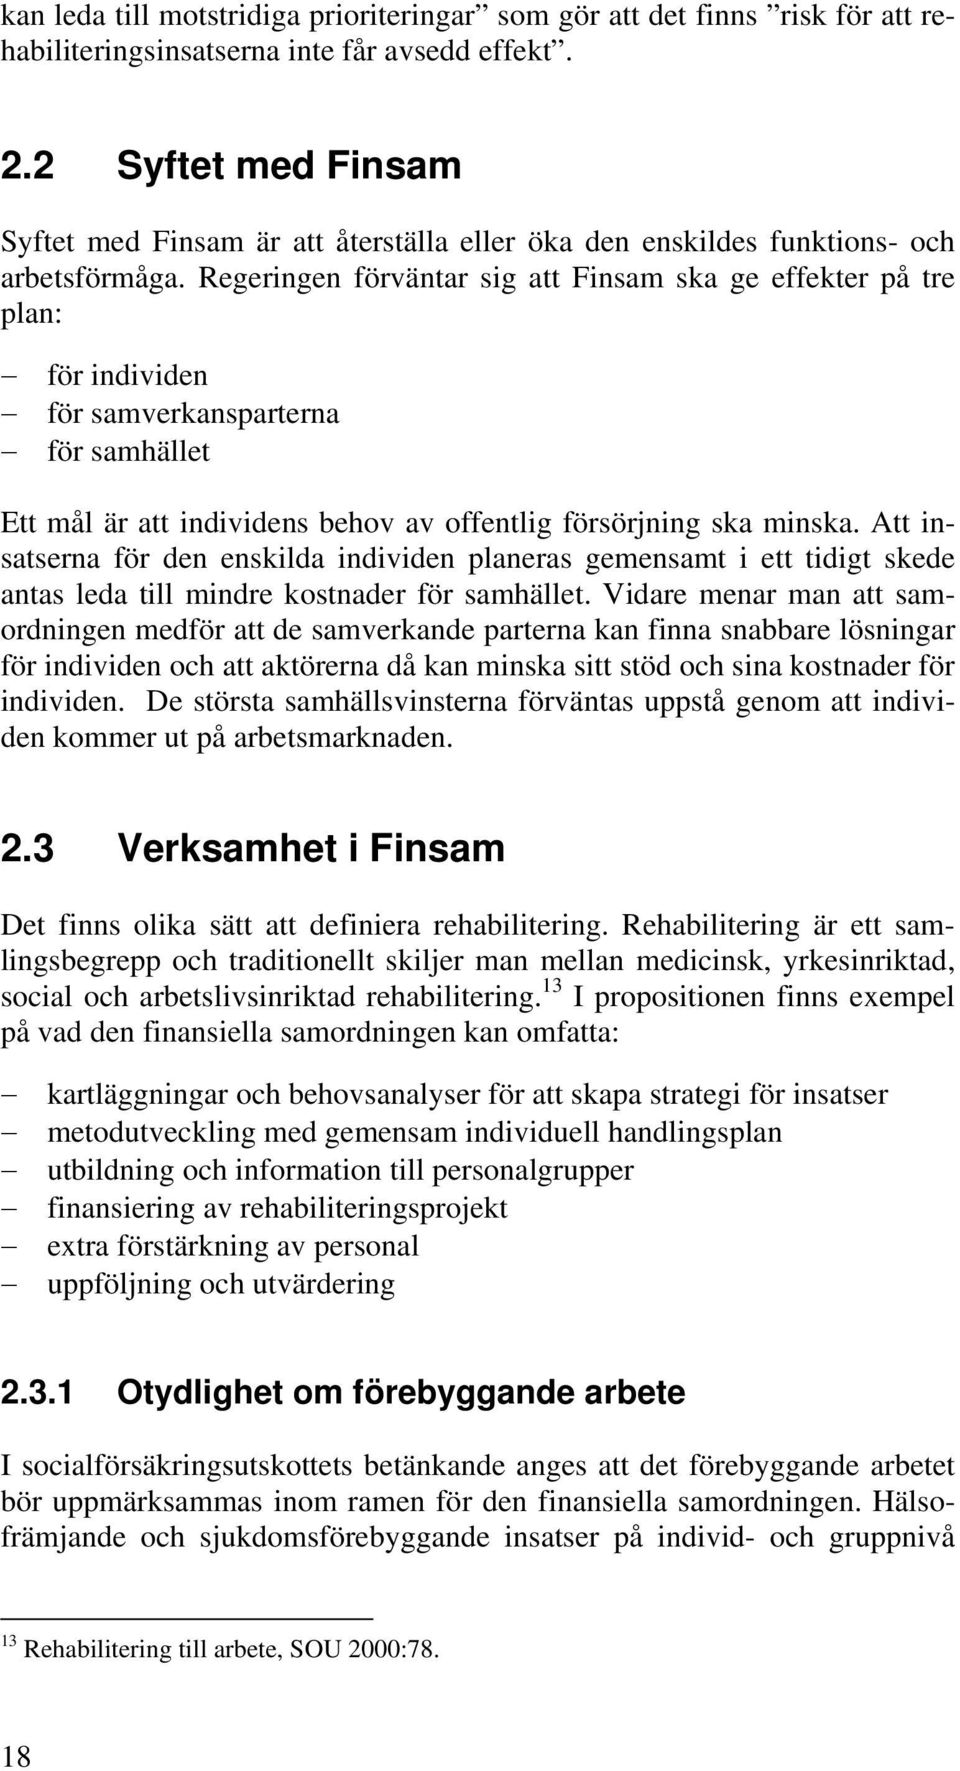 Regeringen förväntar sig att Finsam ska ge effekter på tre plan: för individen för samverkansparterna för samhället Ett mål är att individens behov av offentlig försörjning ska minska.